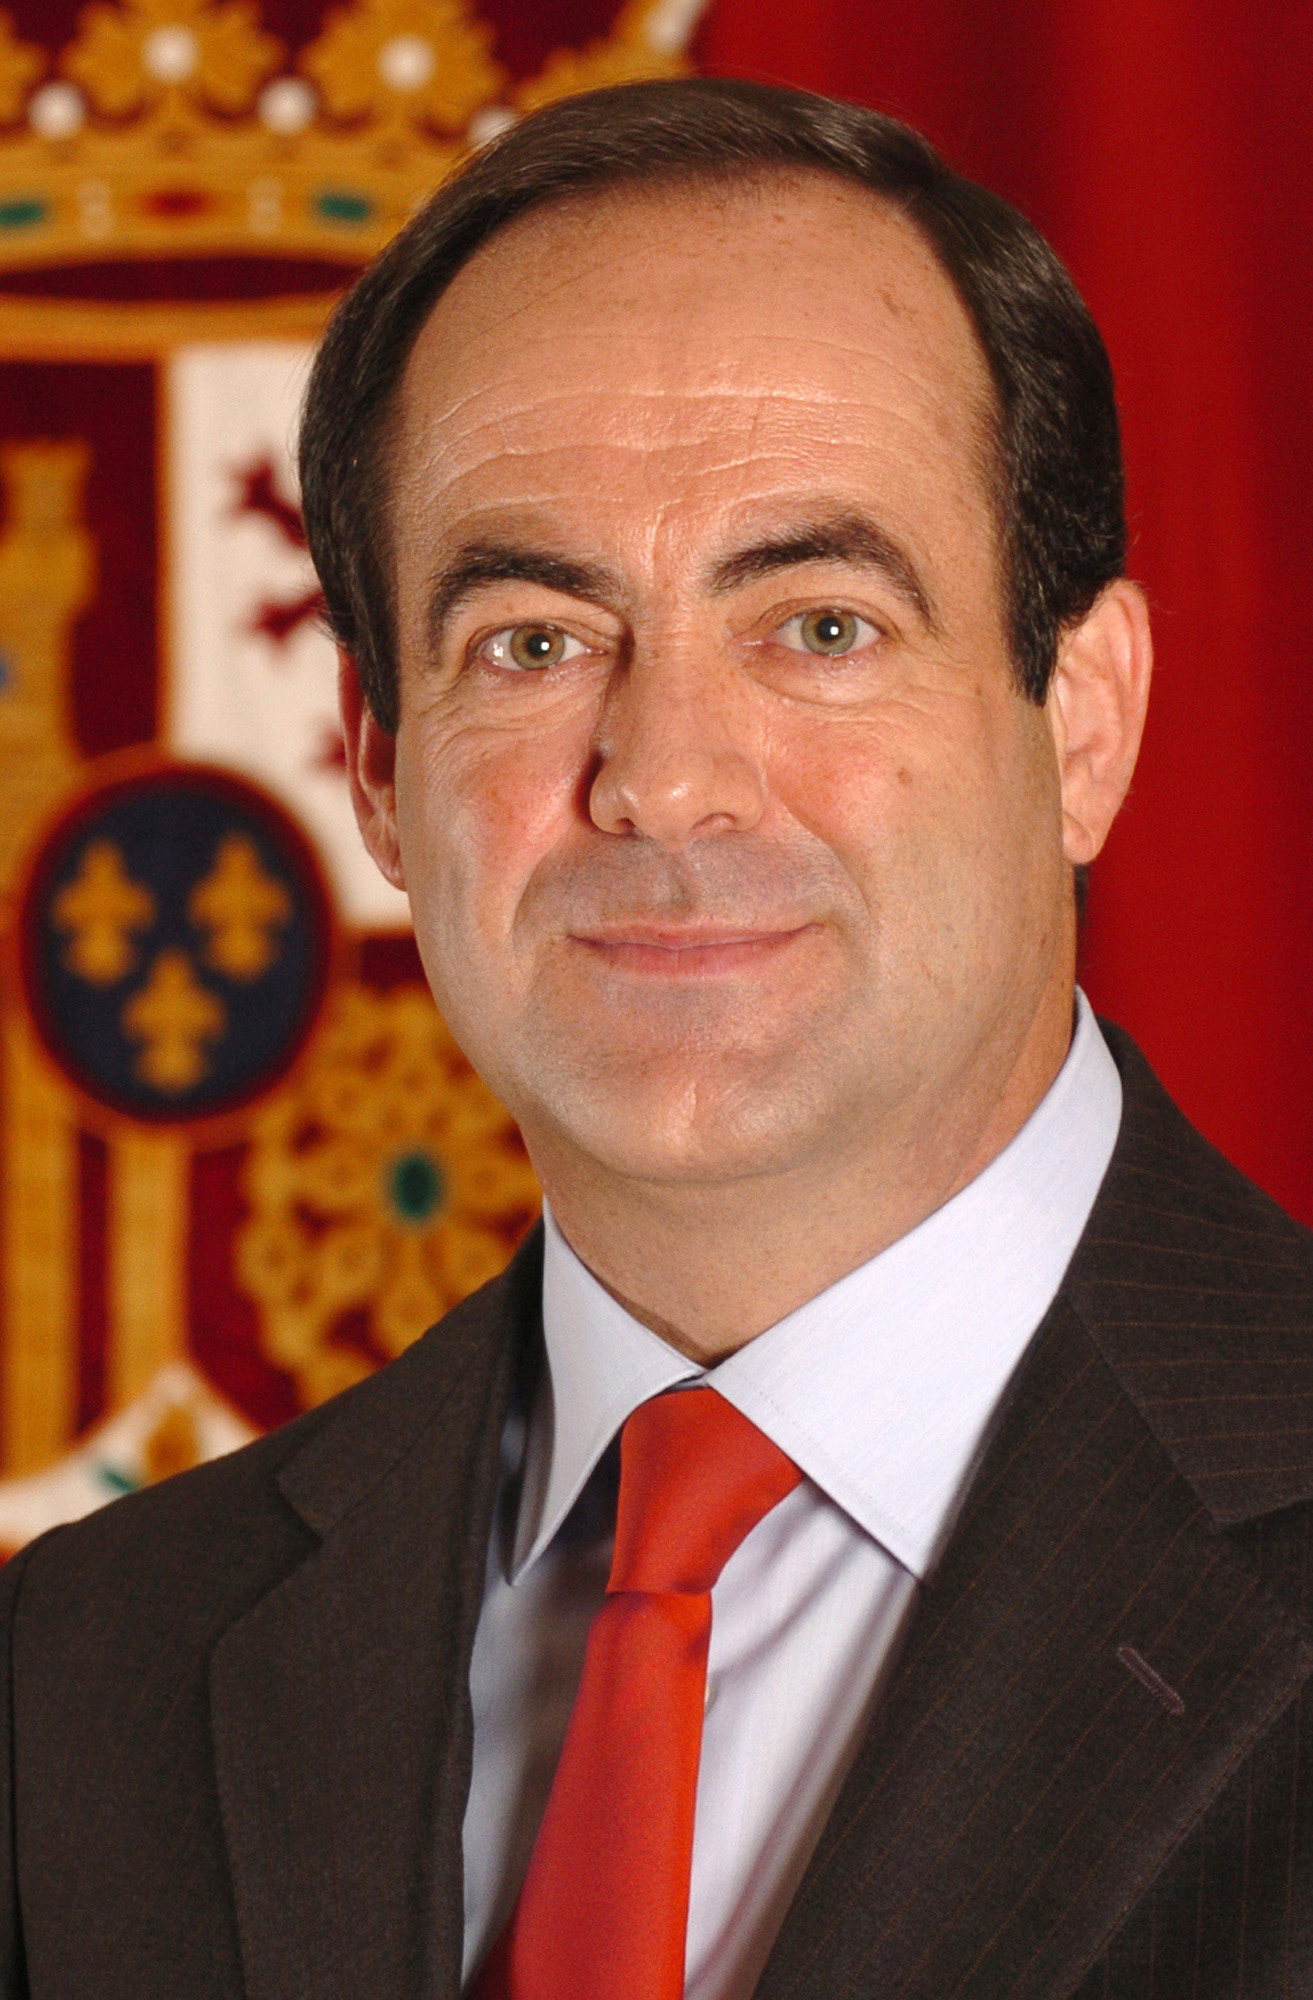 Jose Bono